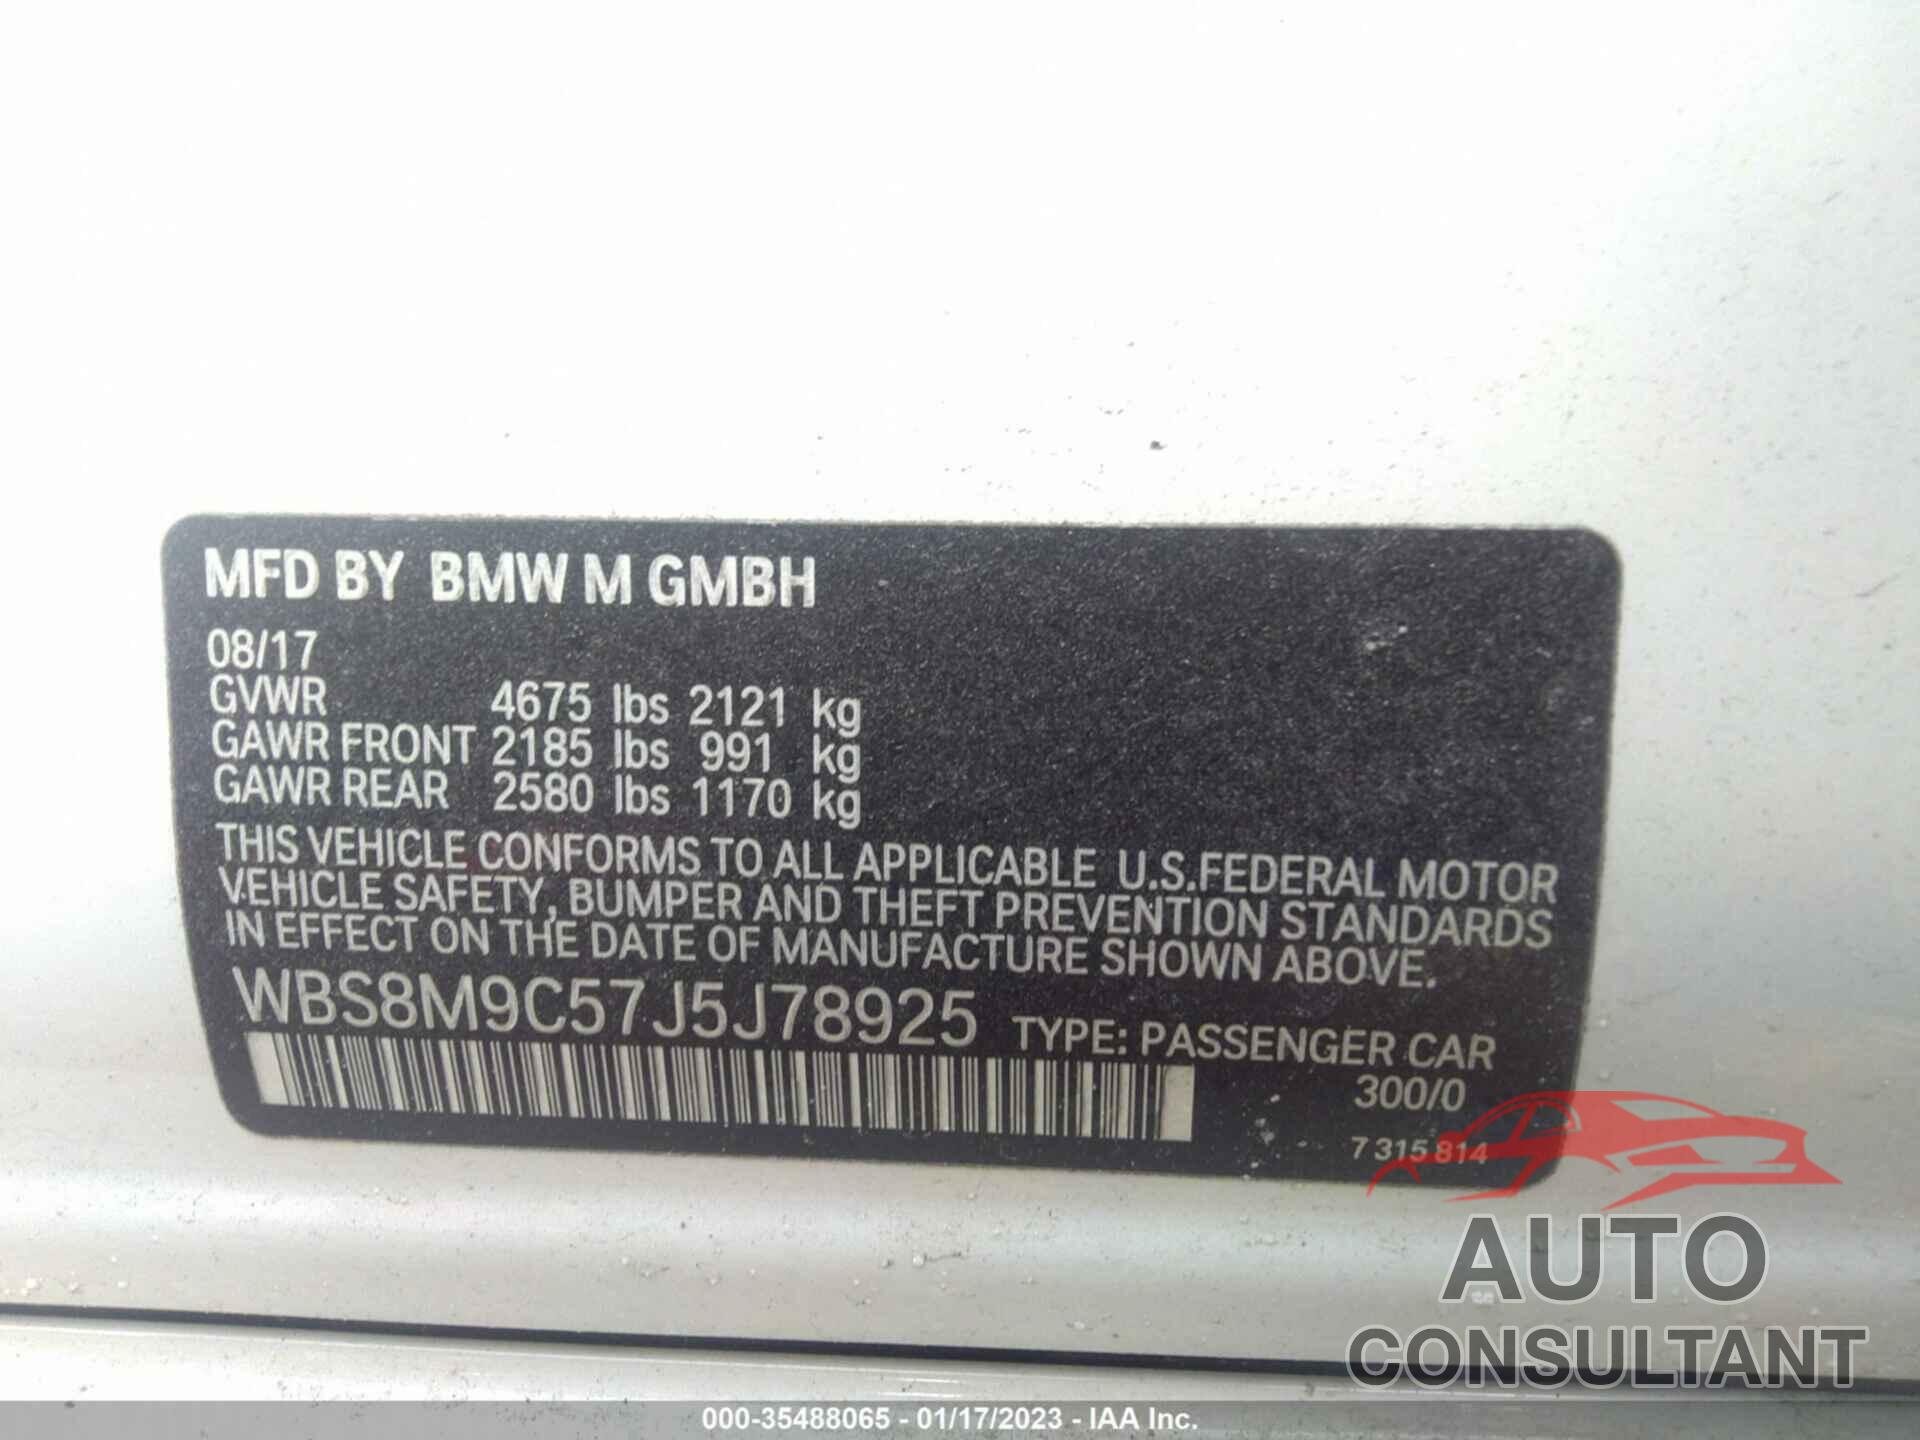 BMW M3 2018 - WBS8M9C57J5J78925